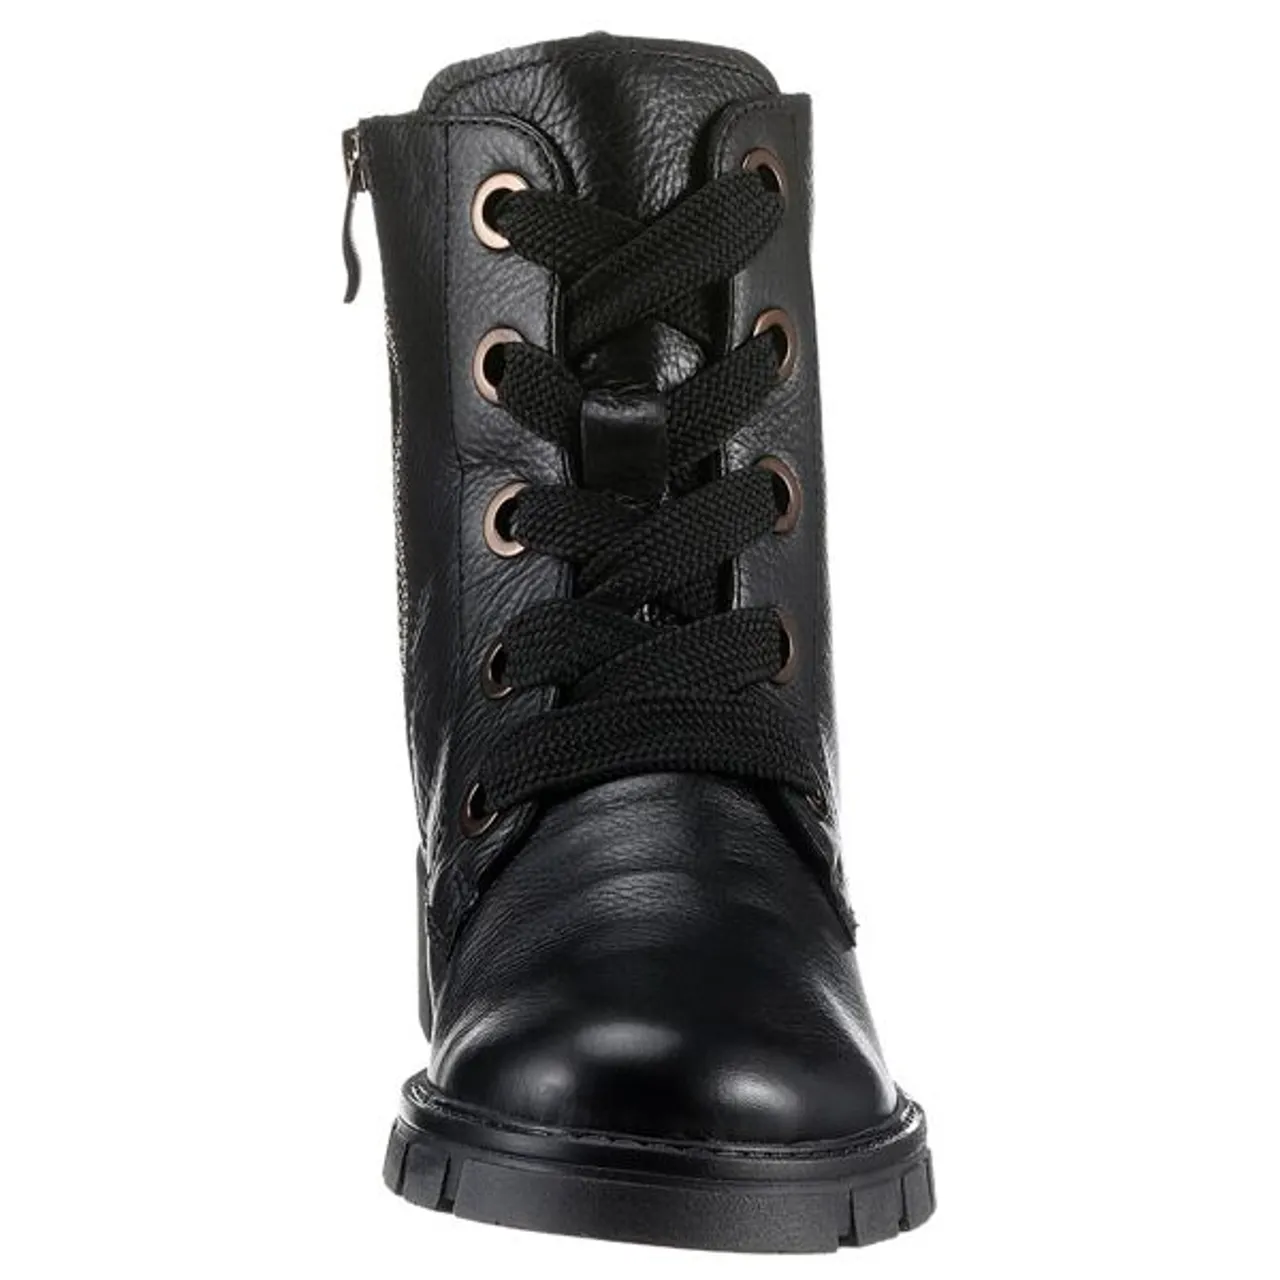 Schnürstiefelette ARA "DOVER" Gr. 6 (39), schwarz Damen Schuhe Reißverschlussstiefeletten mit herausnehmbarem Fußbett, G-Weite = weit